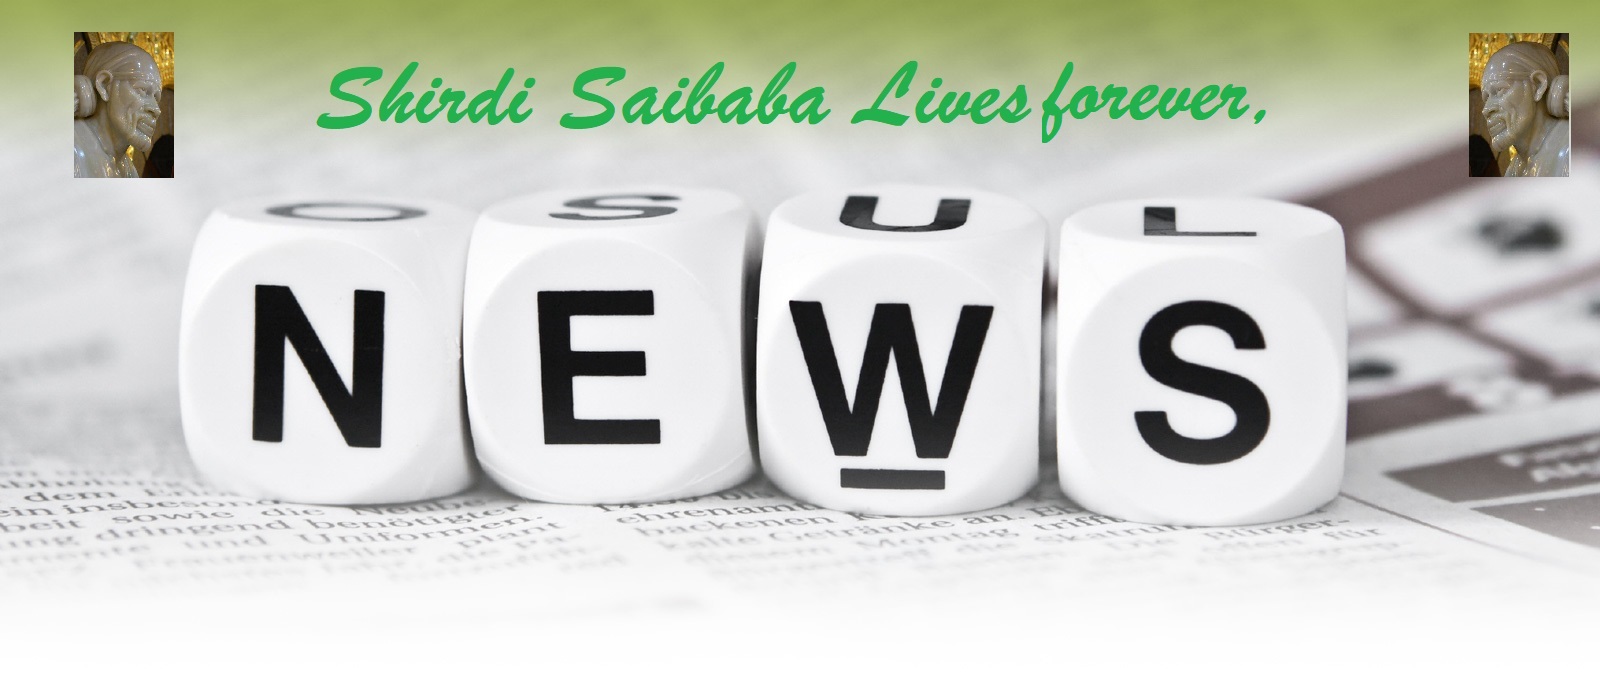 Shirdi Saibaba sansthan news updates